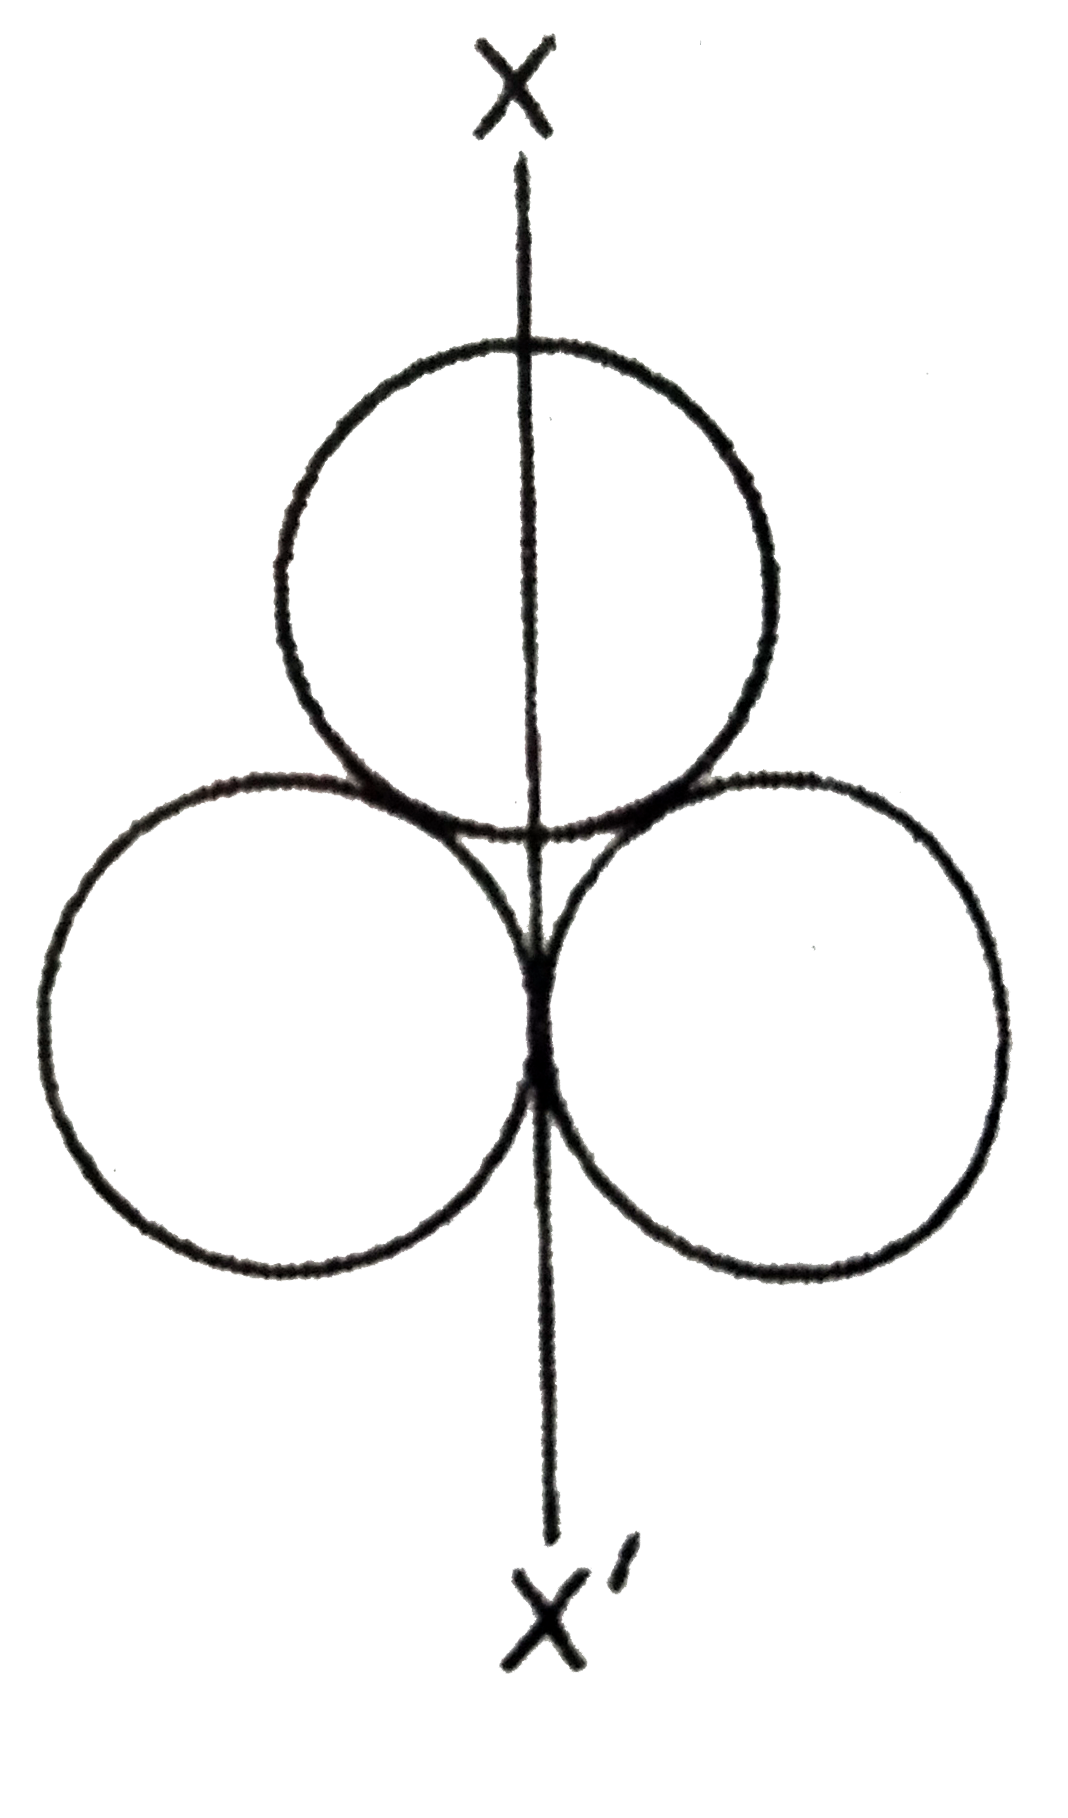 तीन सर्वसम गोलीय कोशों में प्रत्येक कोशों में प्रत्येक का द्रव्यमान m तथा त्रिज्या r है। इन्हें आरेख में दर्शाये गये अनुसार रखा गया है। XX’ एक अक्ष है। जो दो गोलीय कोशों को स्पर्श करती है तथा तीसरे के व्यास से होकर गुजरती है। XX’ अक्ष के परितः इन तीन गोलीय कोशों के निकाय का जड़त्व आघूर्ण होगा: